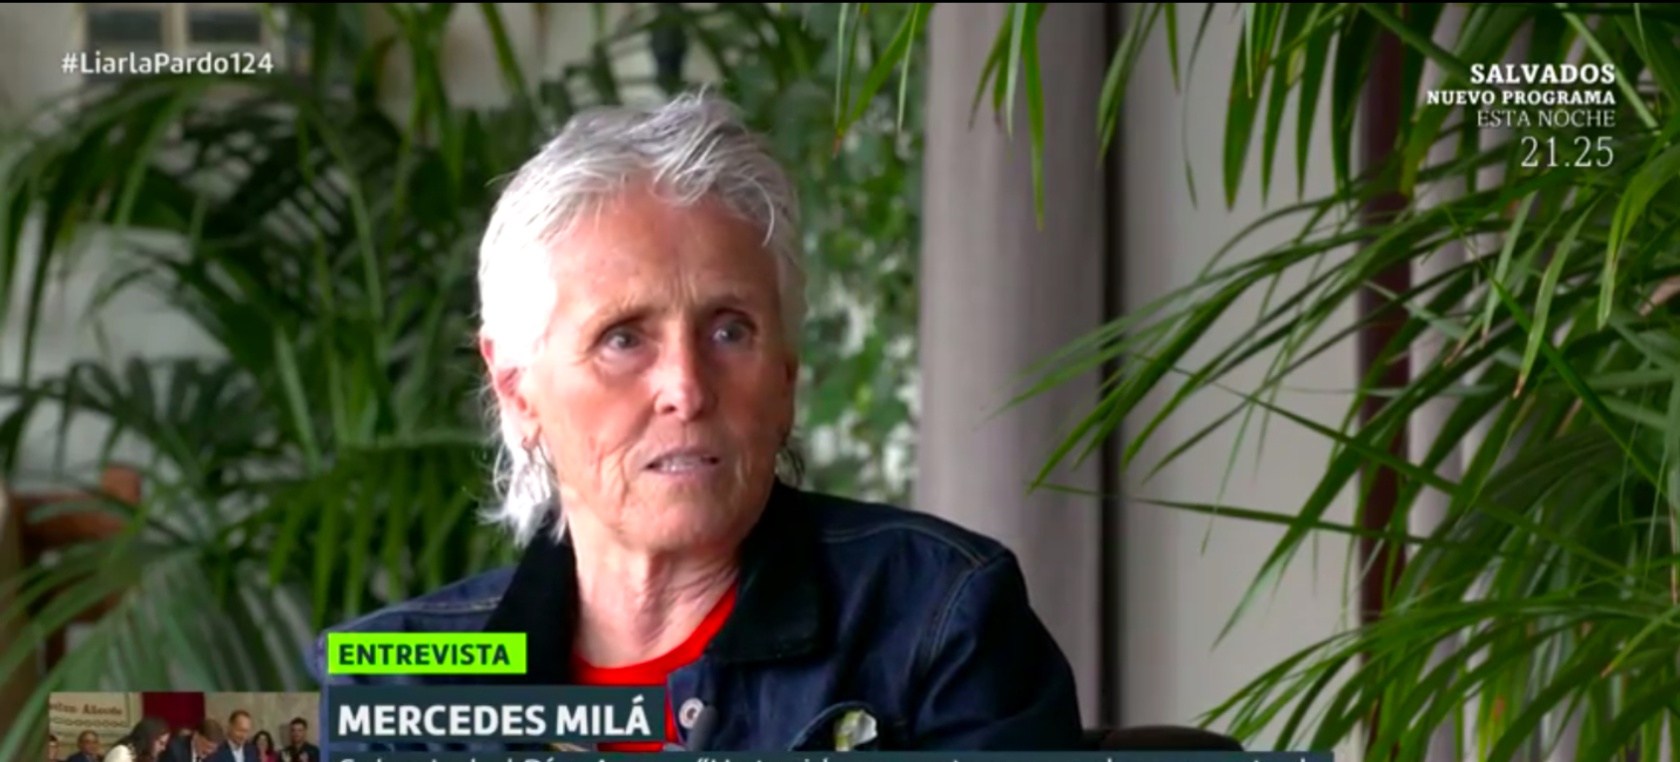 El sorprendente posicionamiento de Mercedes Milá: “Se ha dado cuenta de las angustias de la gente”